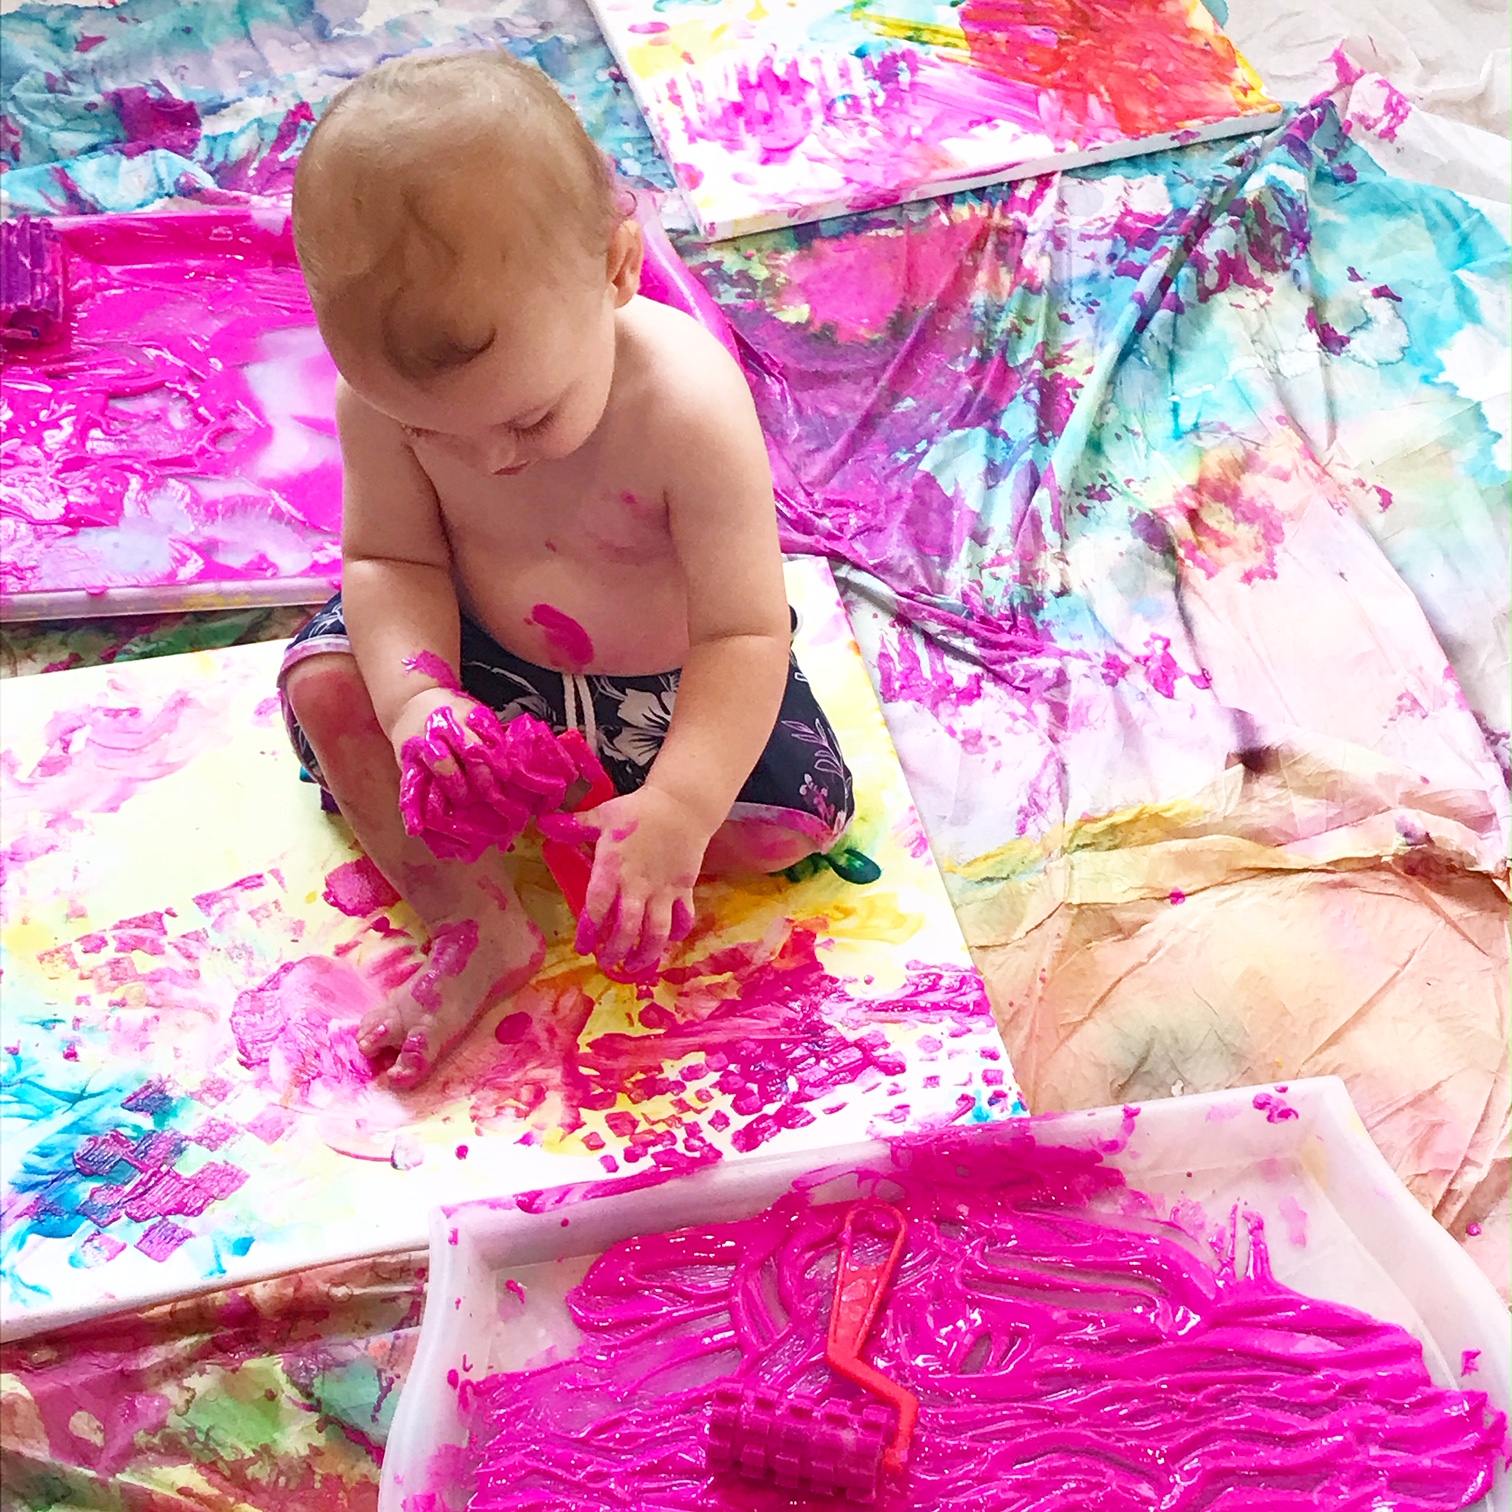 Toddler Art with Clara: A Child's First Art Materials